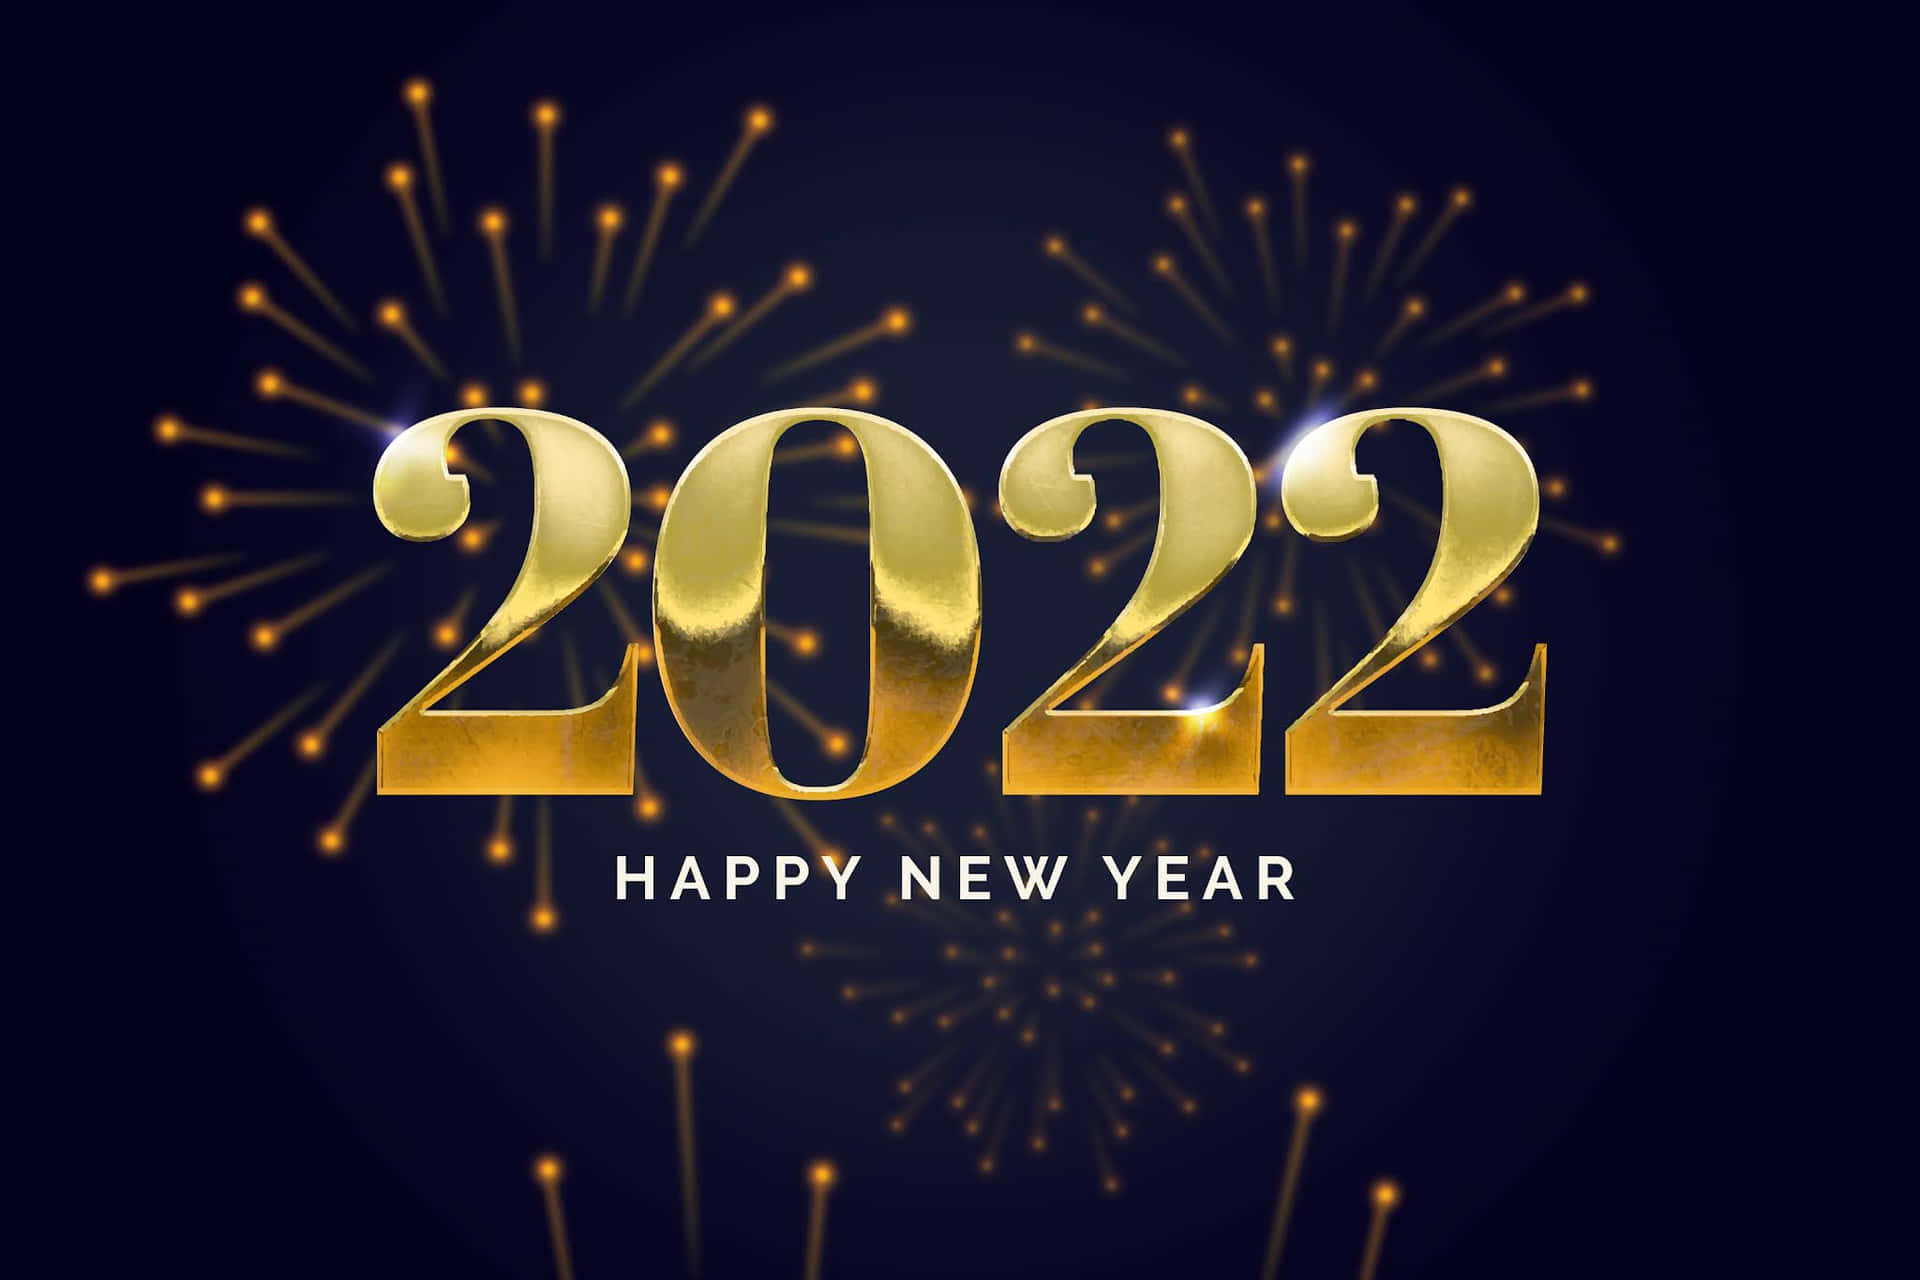 Preparatia Festeggiare - Buon Anno Nuovo 2022